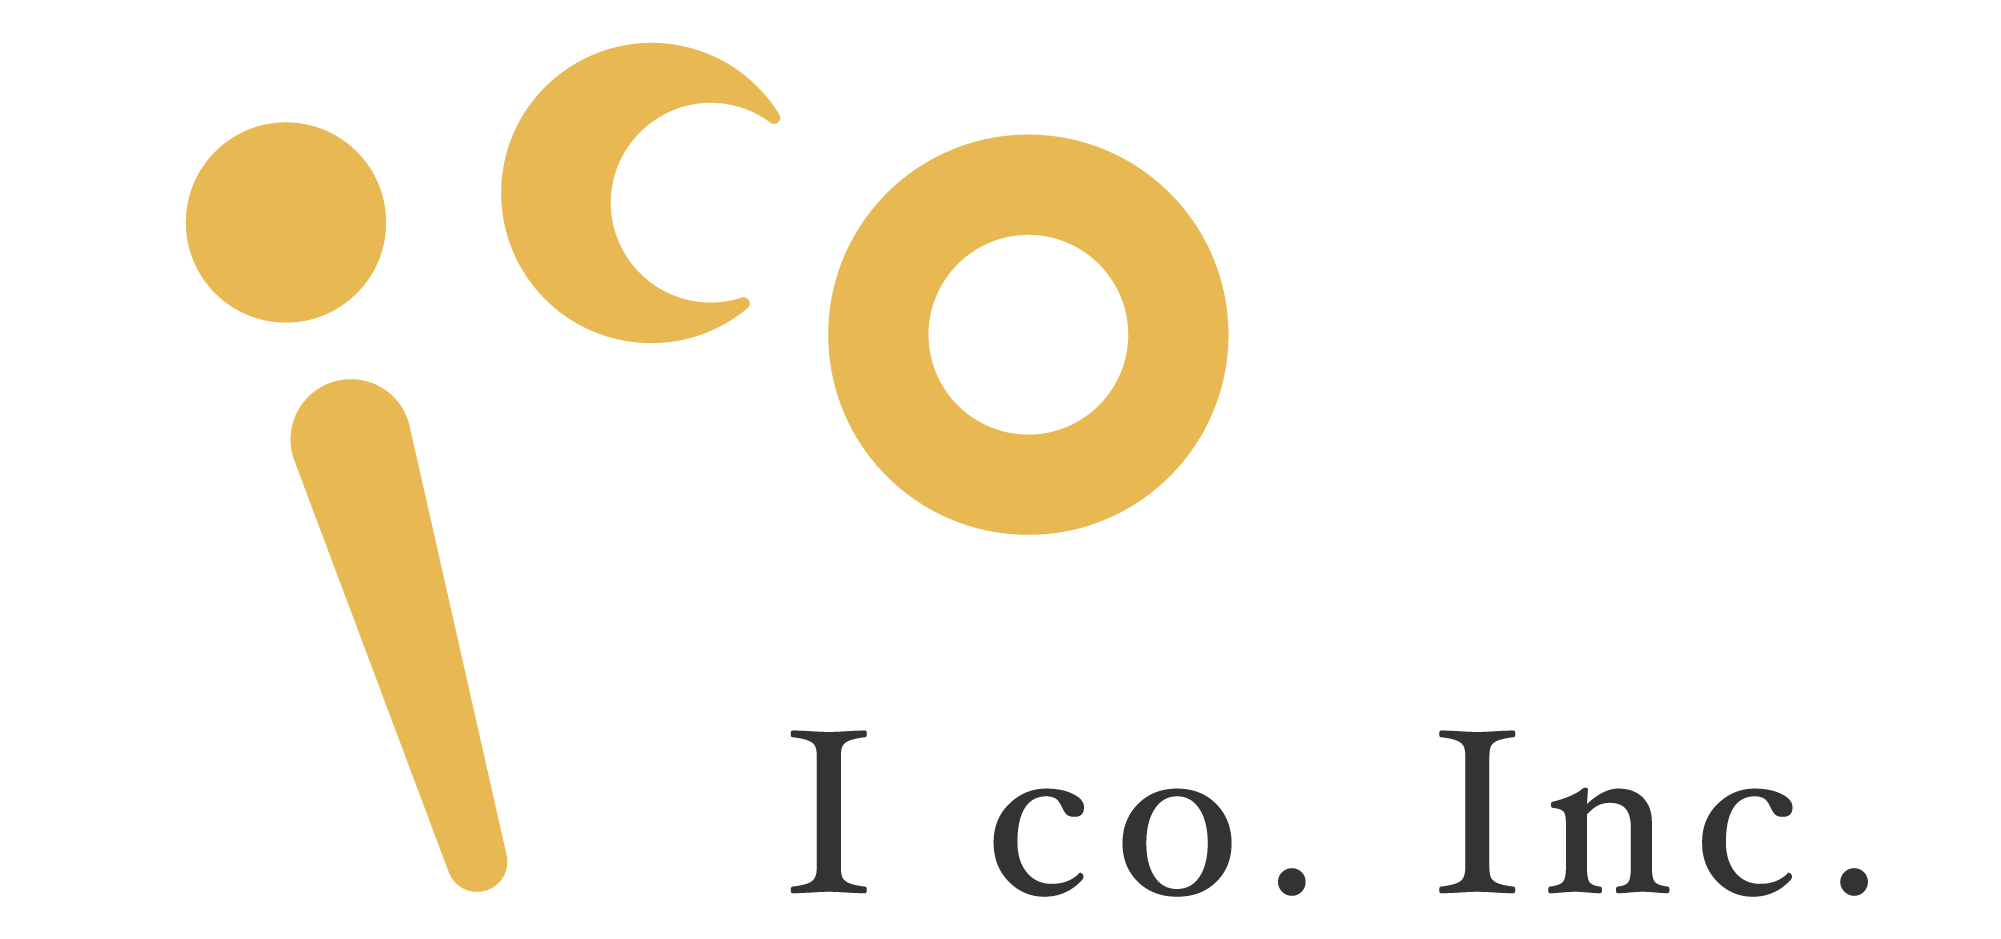 I co. Inc.